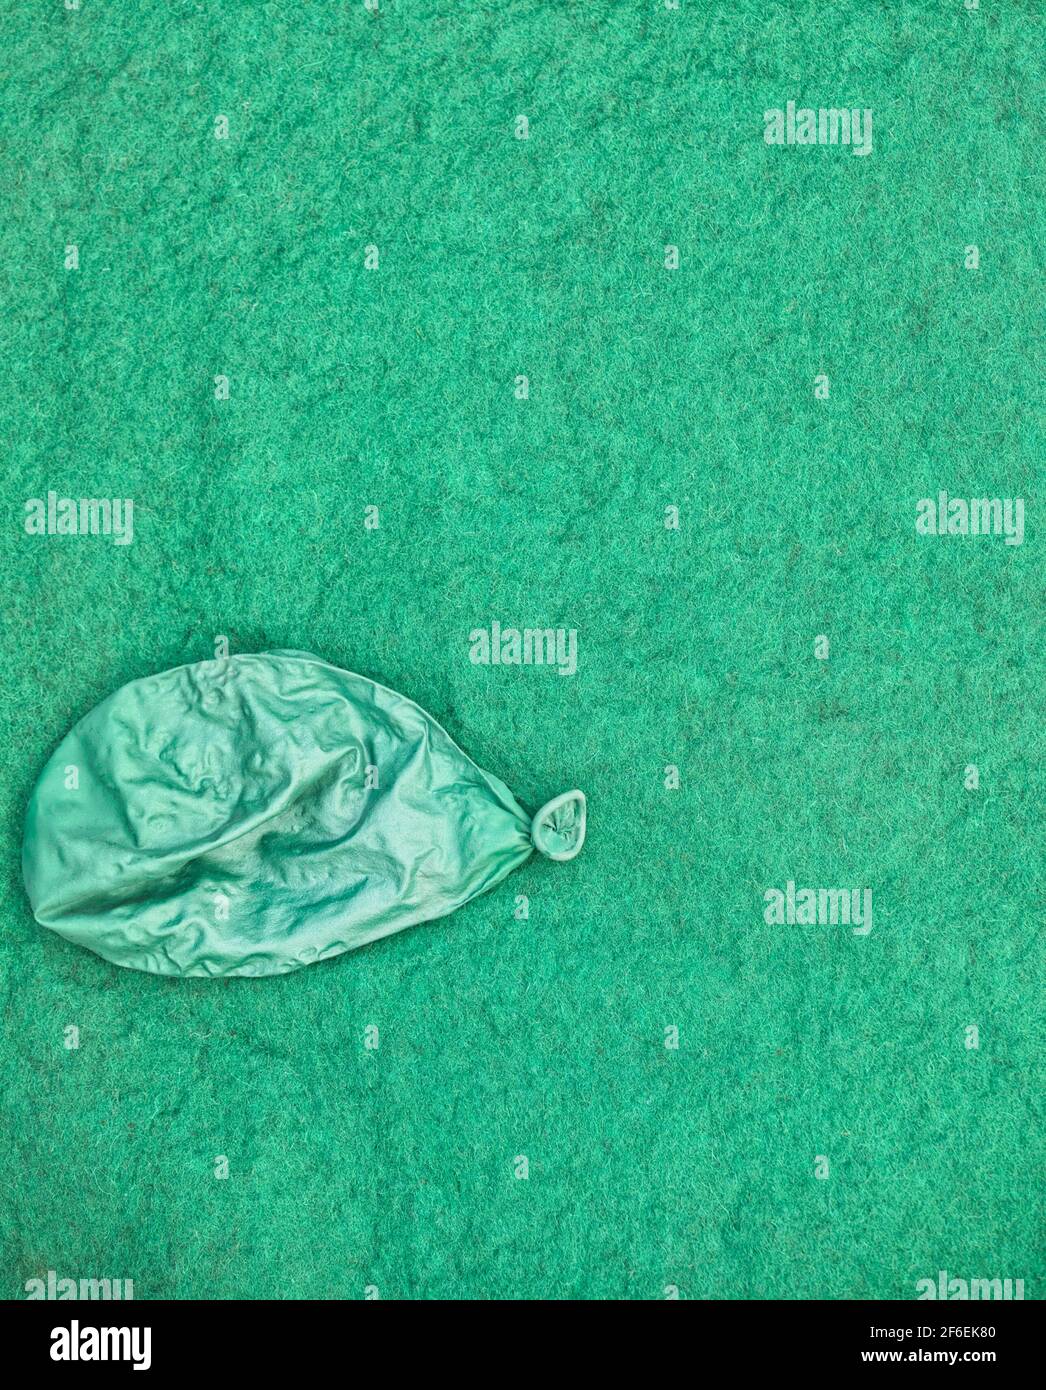 Ballon vert dégonflé isolé sur fond vert texturé. Concept de triste, malheureux, épuisé, destruction Banque D'Images